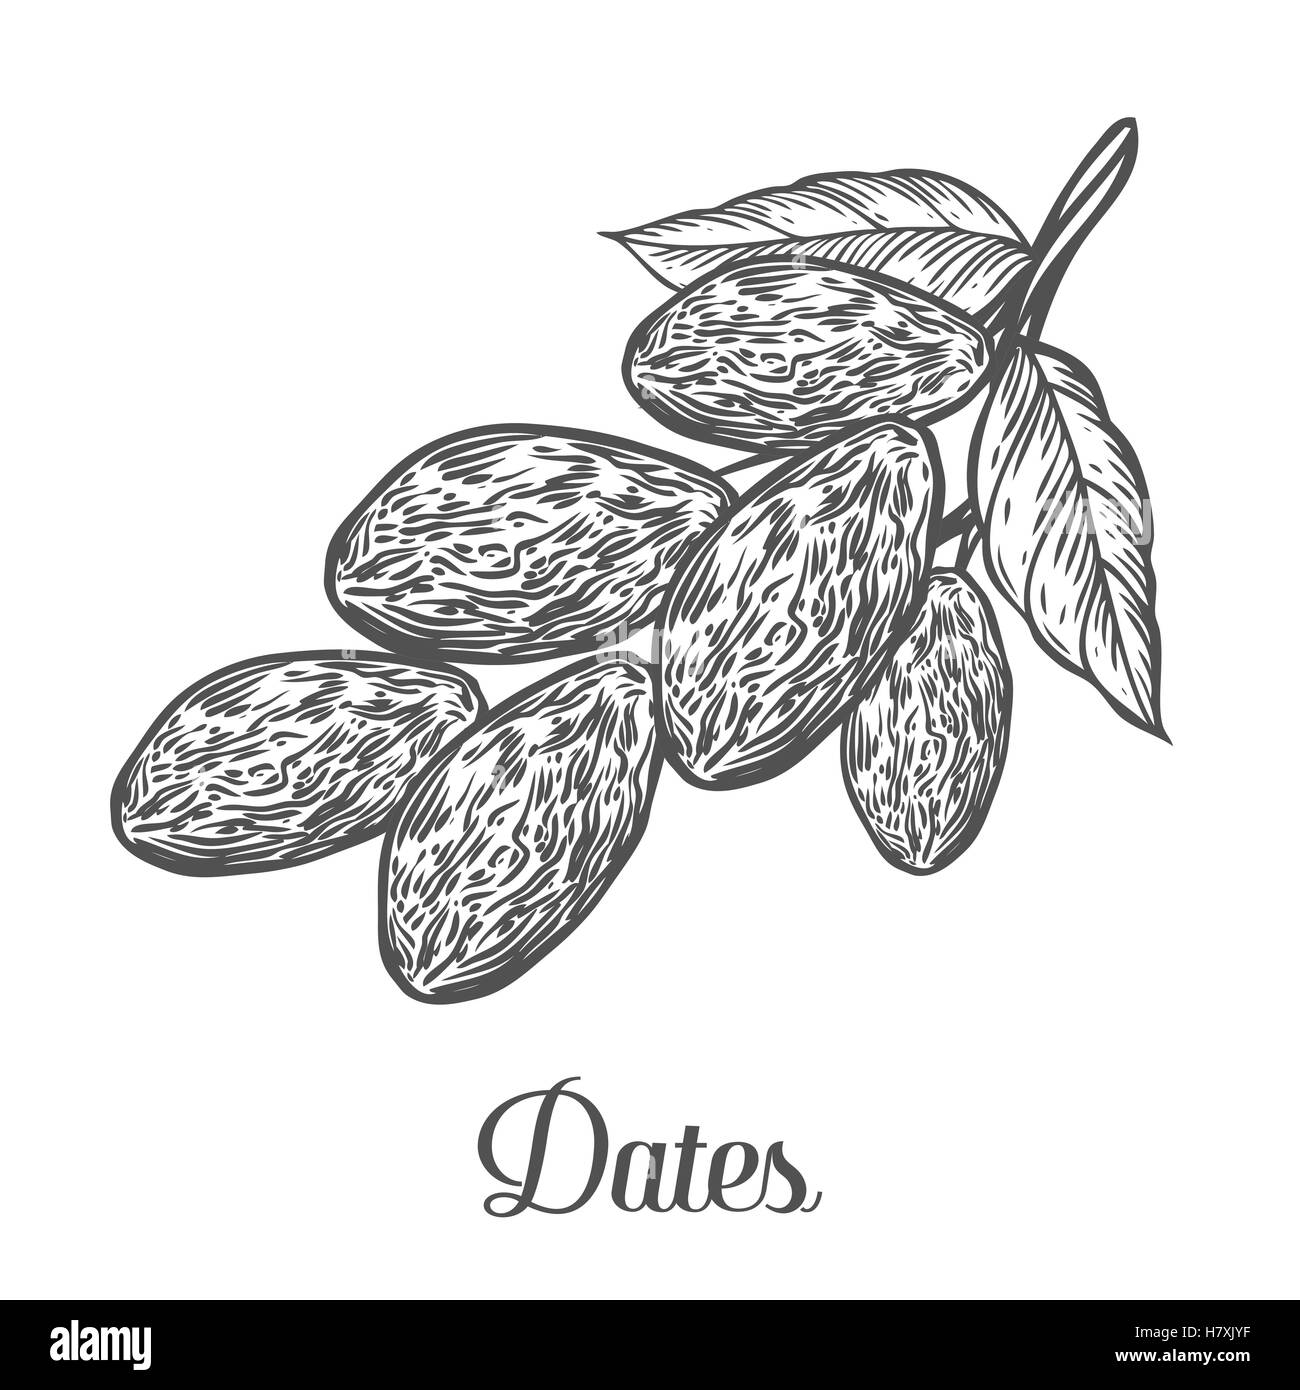 Les dates. Hand drawn vector illustration de dattes séchées (Ramadan Iftar) alimentation alimentation biologique date palm sur fond blanc. Illustration de Vecteur